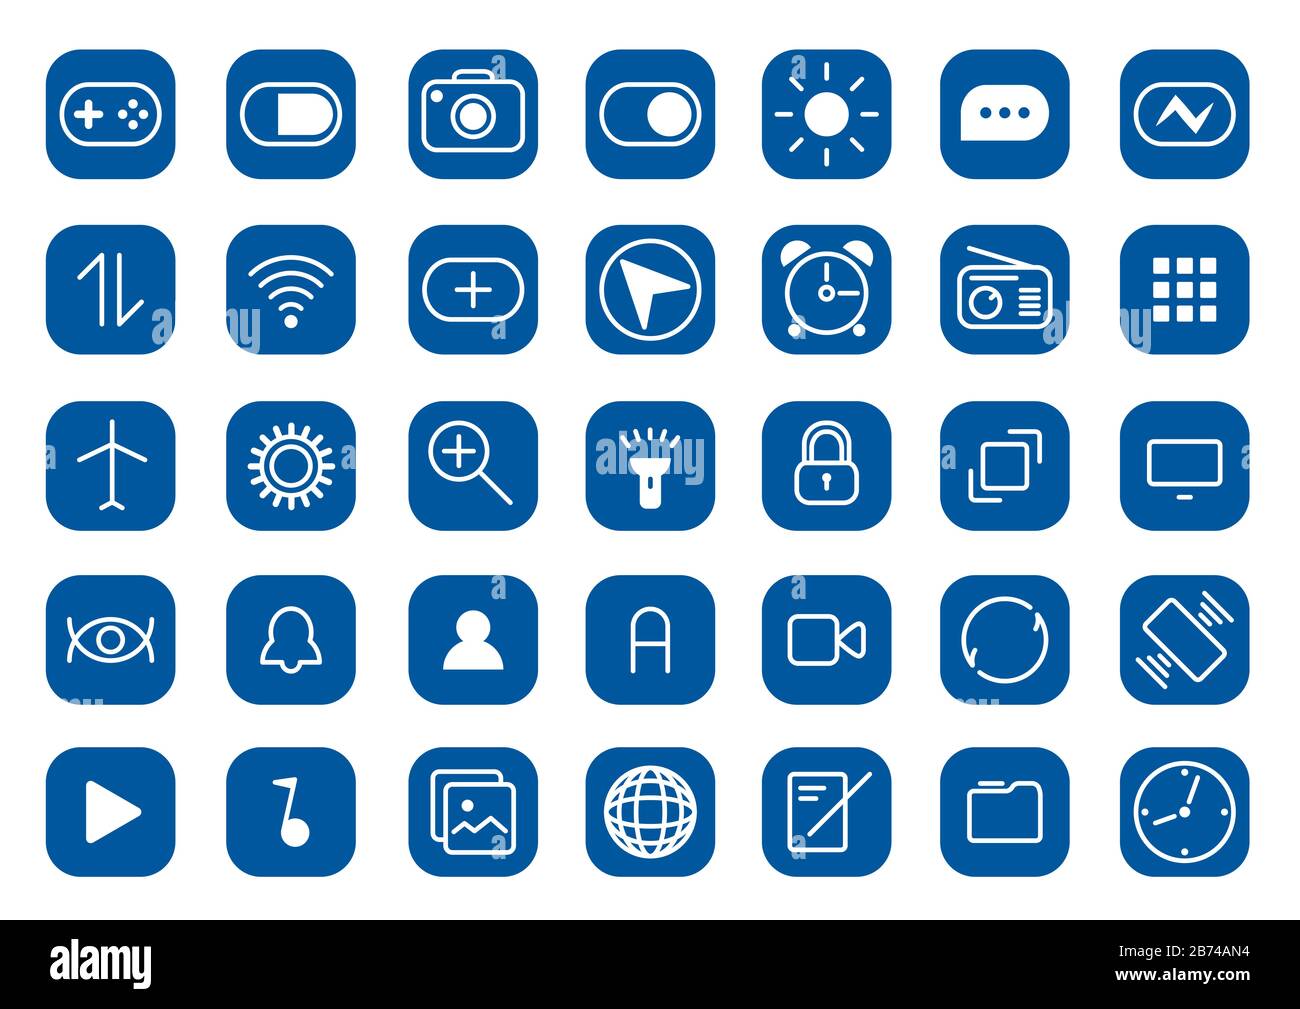 Mobile Symbole in blauen Farben, vereinfachte Symbole auf dem mobilen  Smartphone-Bildschirm Stockfotografie - Alamy